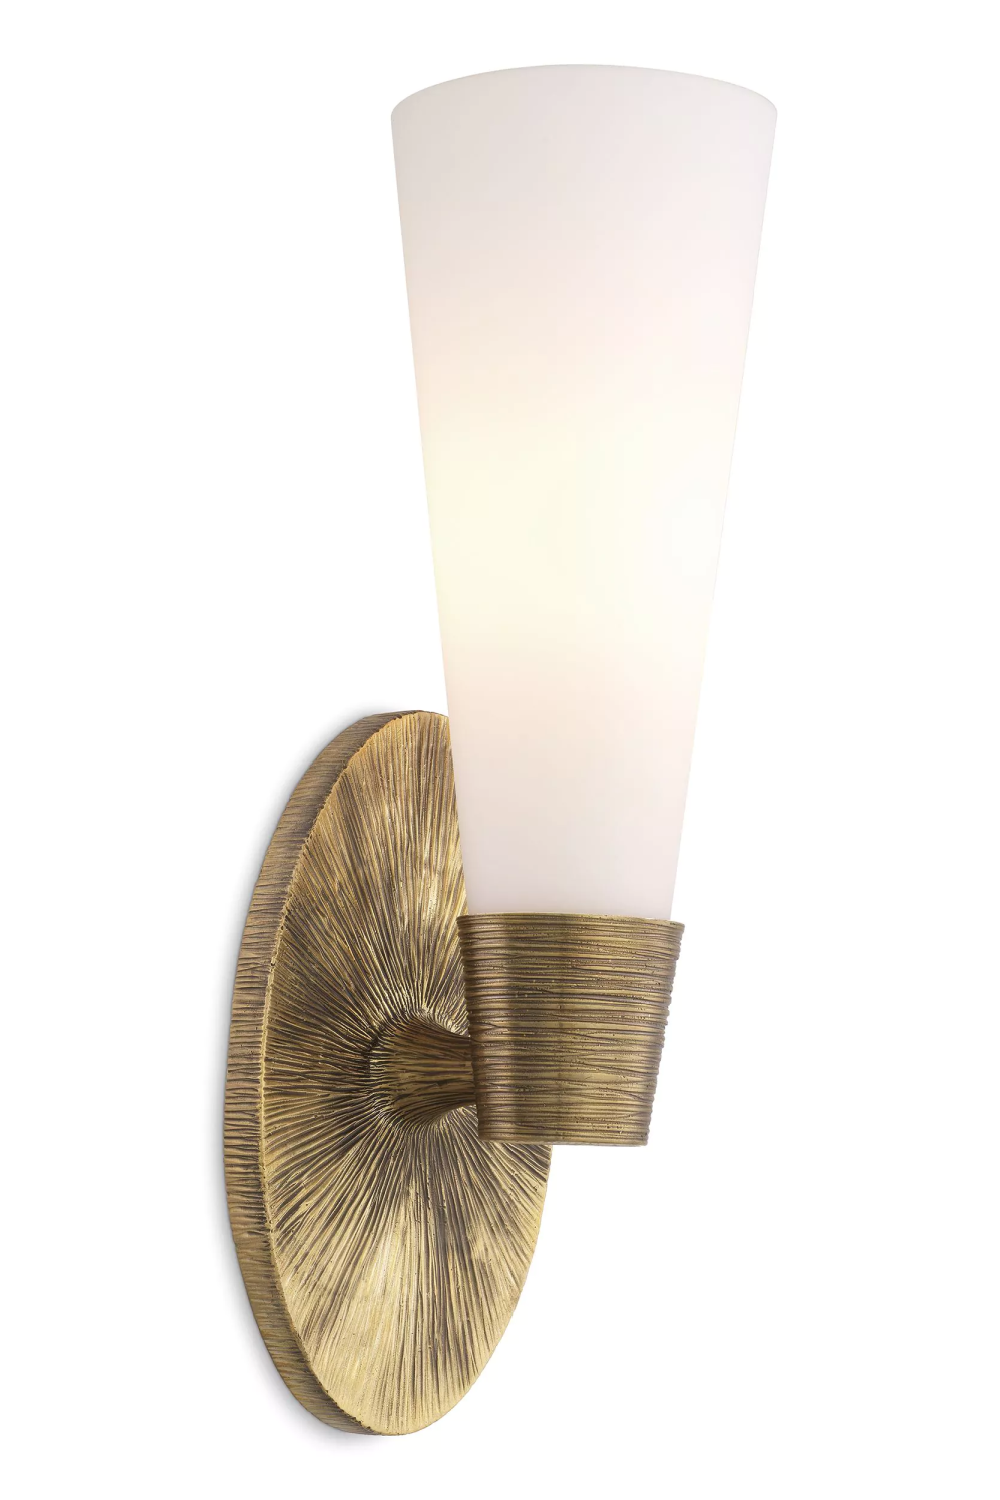 White Glass Wall Lamp | Eichholtz Nolita | OROA